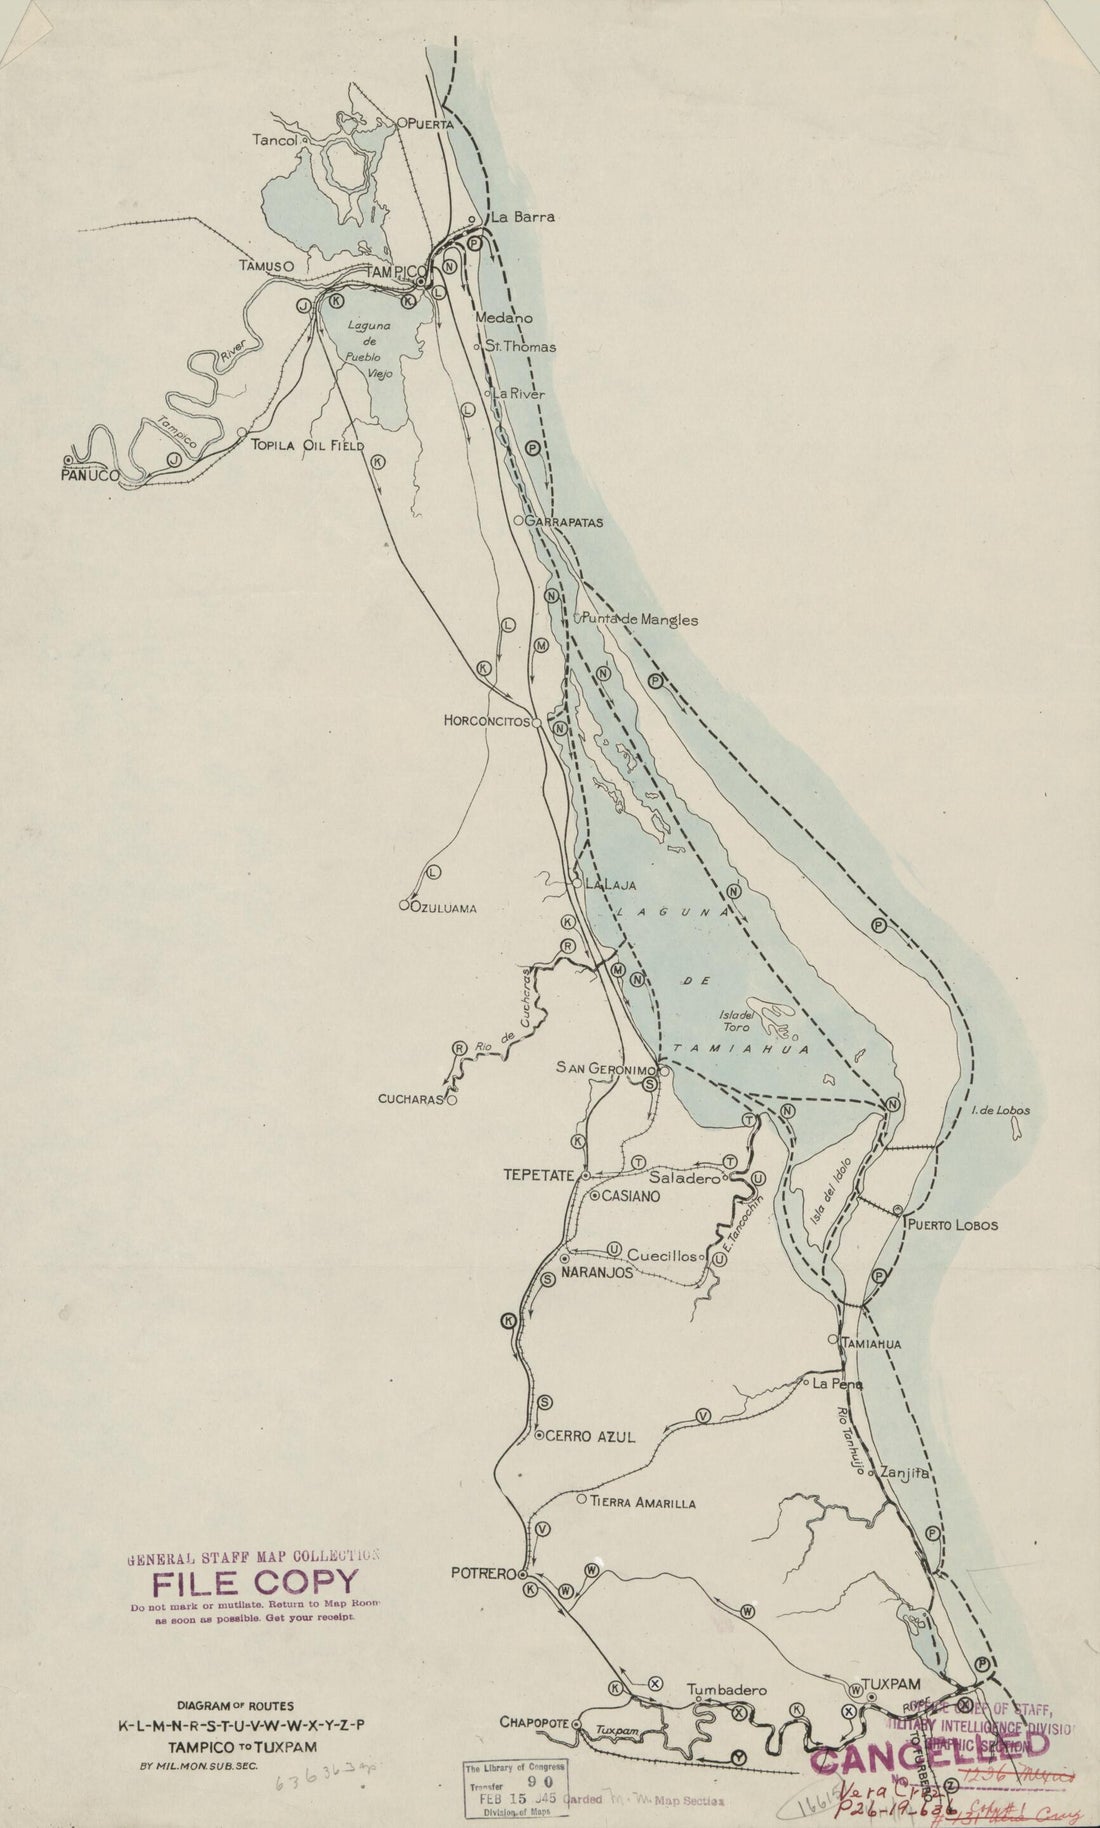 This old map of L-M-N-R-S-T-U-V-W-X-Y-Z-P, Tampico to Tuxpam. (Diagram of Routes K, L, M, N, R, S,T, U, V, W, X, Y, Z, P, Tampico to Tuxpam) from 1919 was created by  in 1919